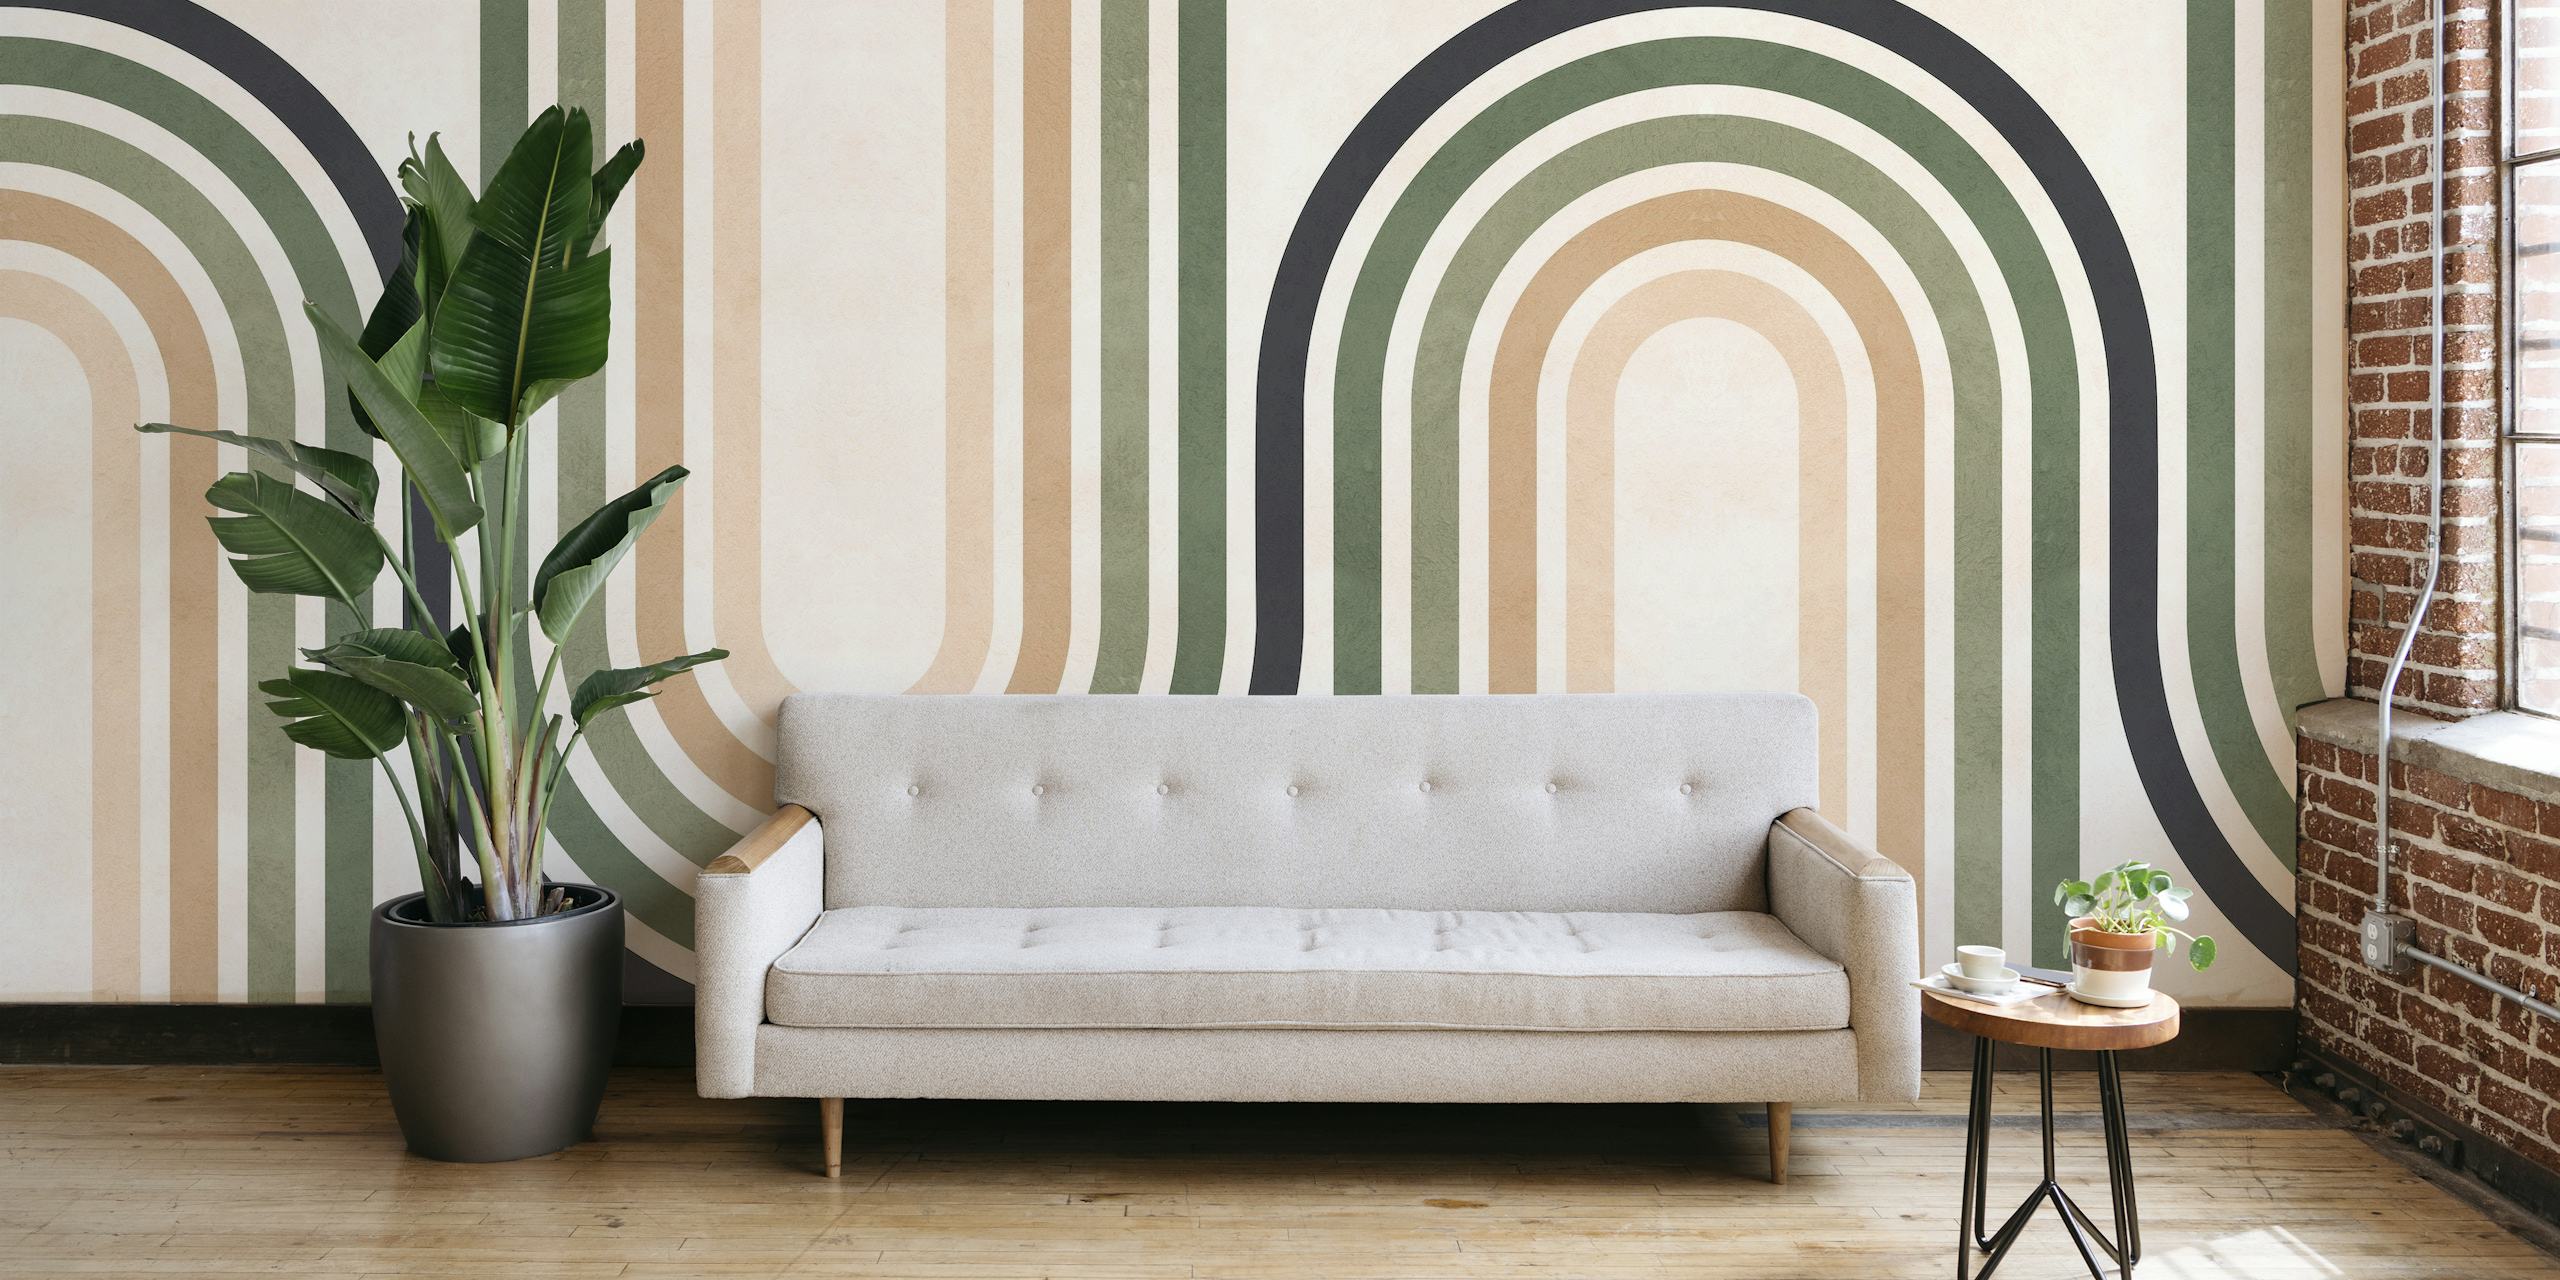 Zidni mural sa apstraktnim linijama i krugovima u neutralnim tonovima